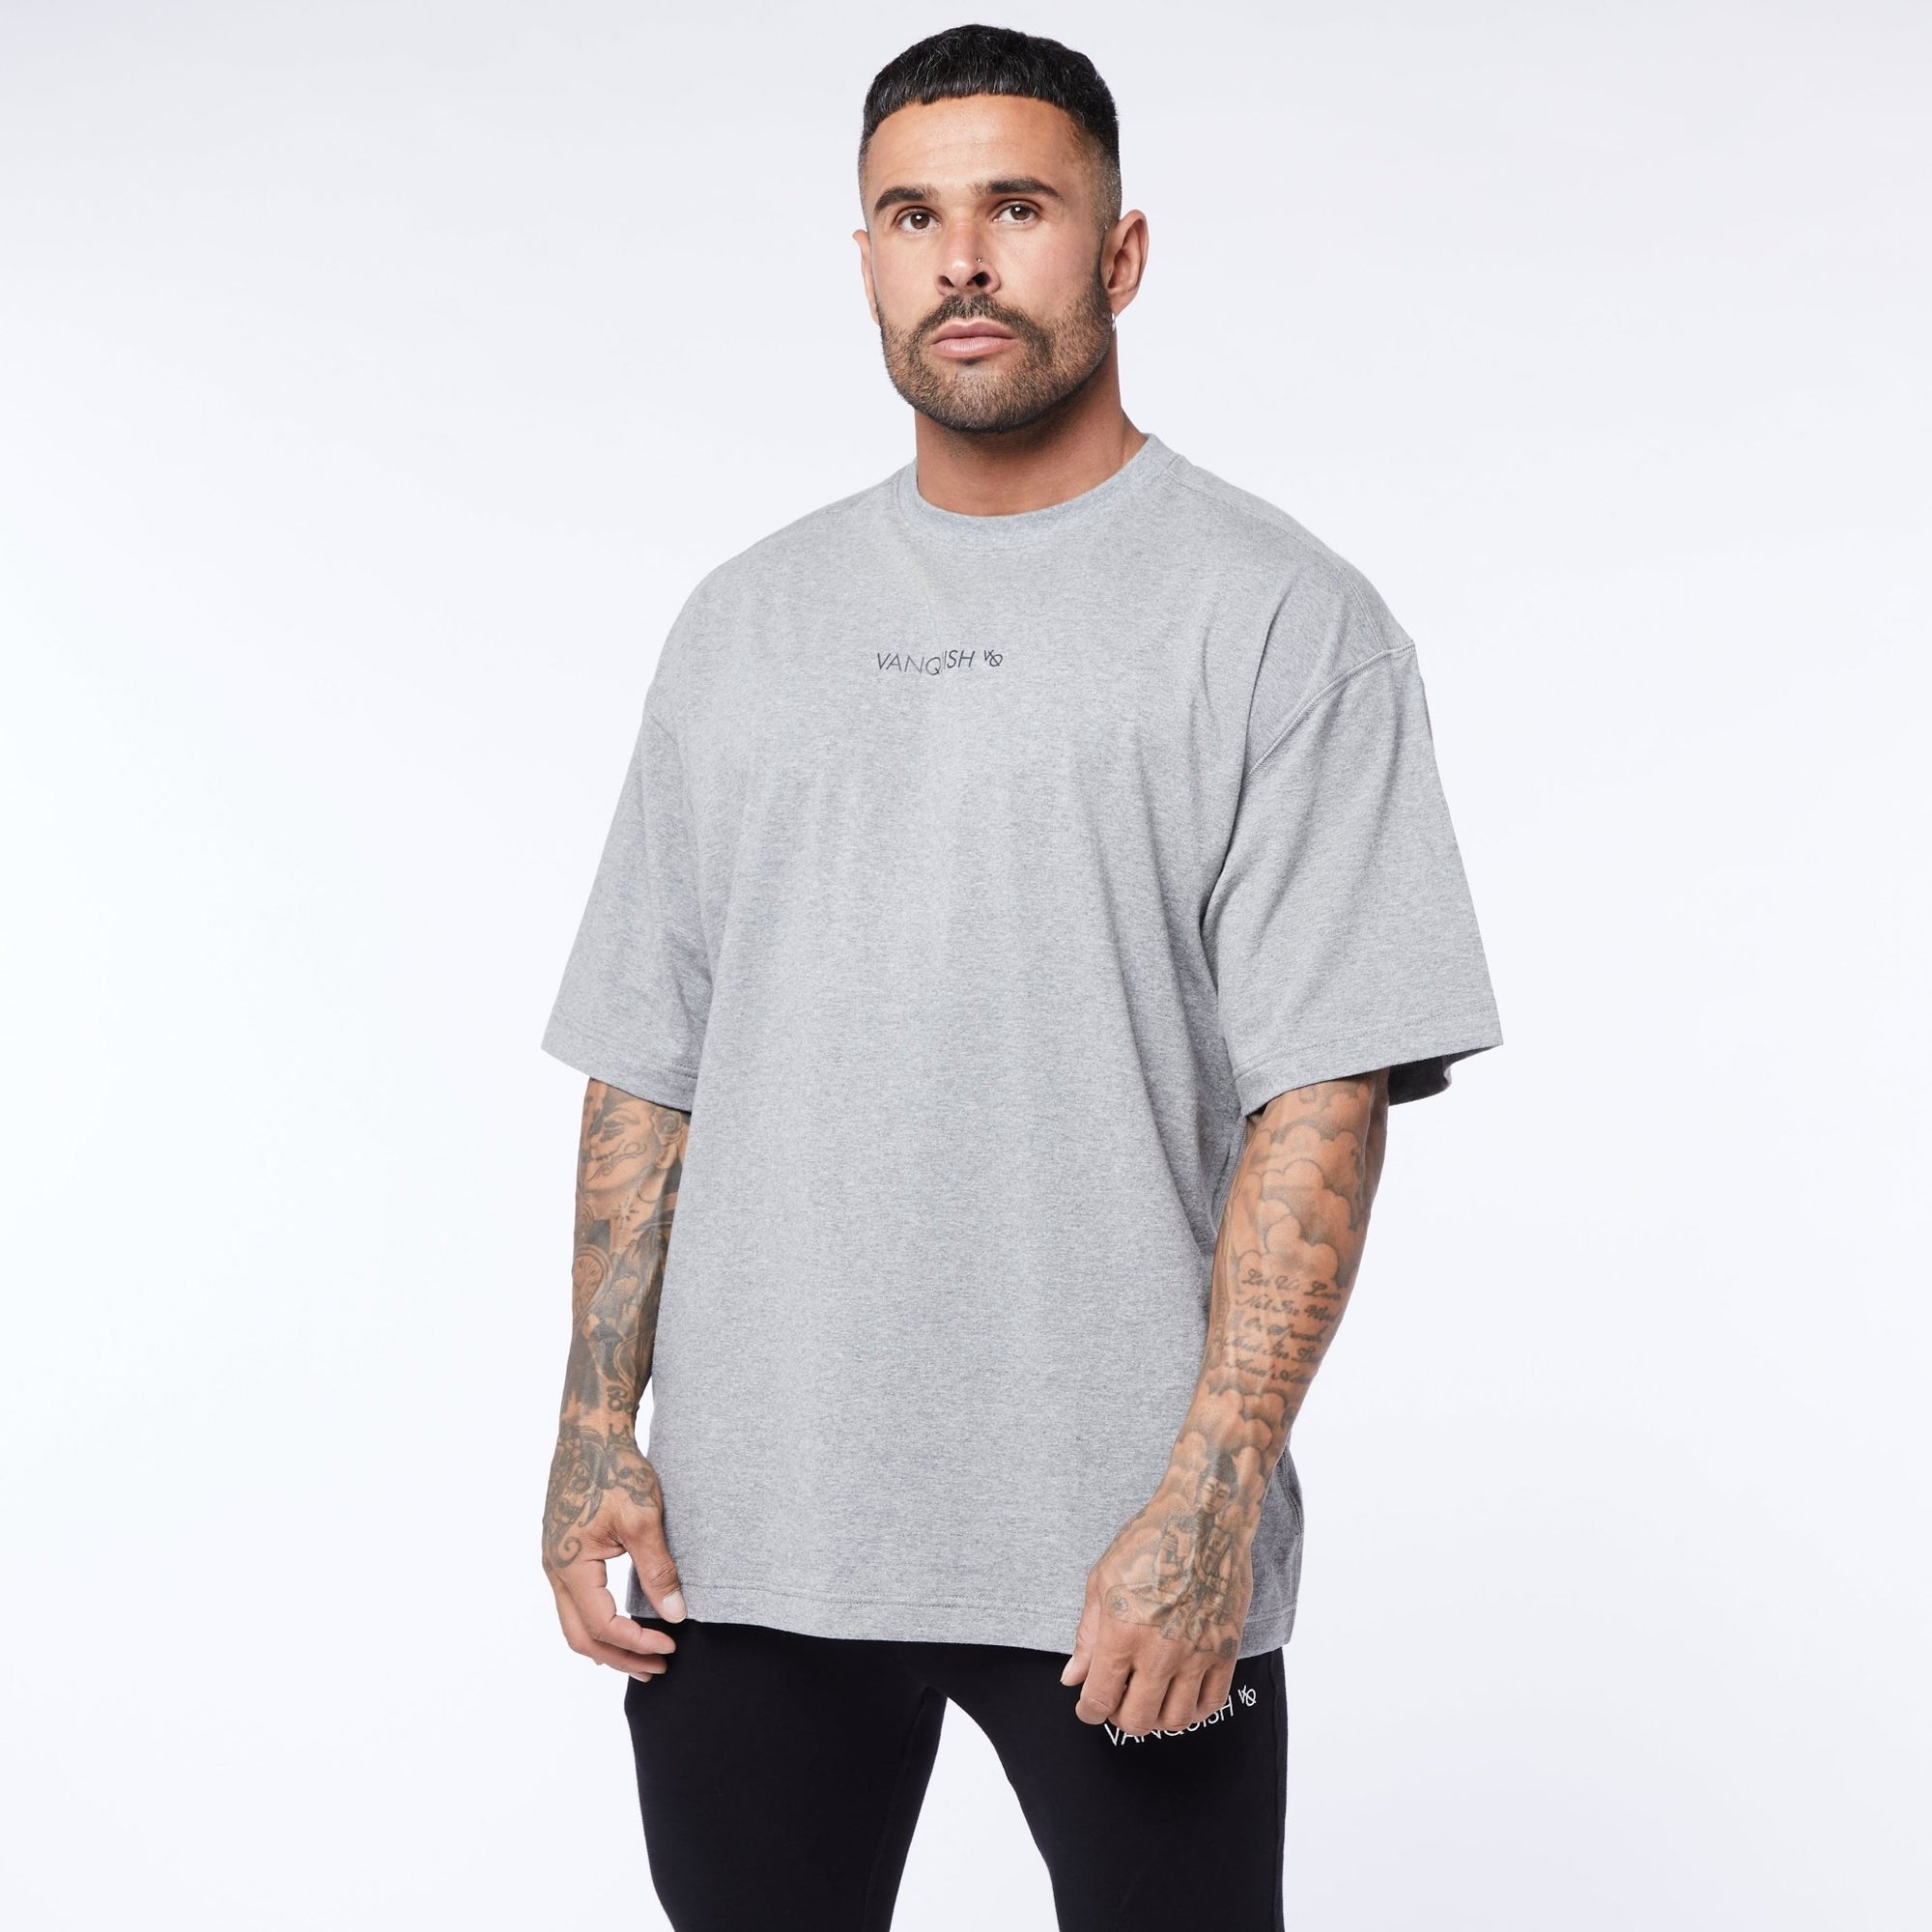 Vanquish Core Grey Oversized T Shirt - Vanquish Fitness